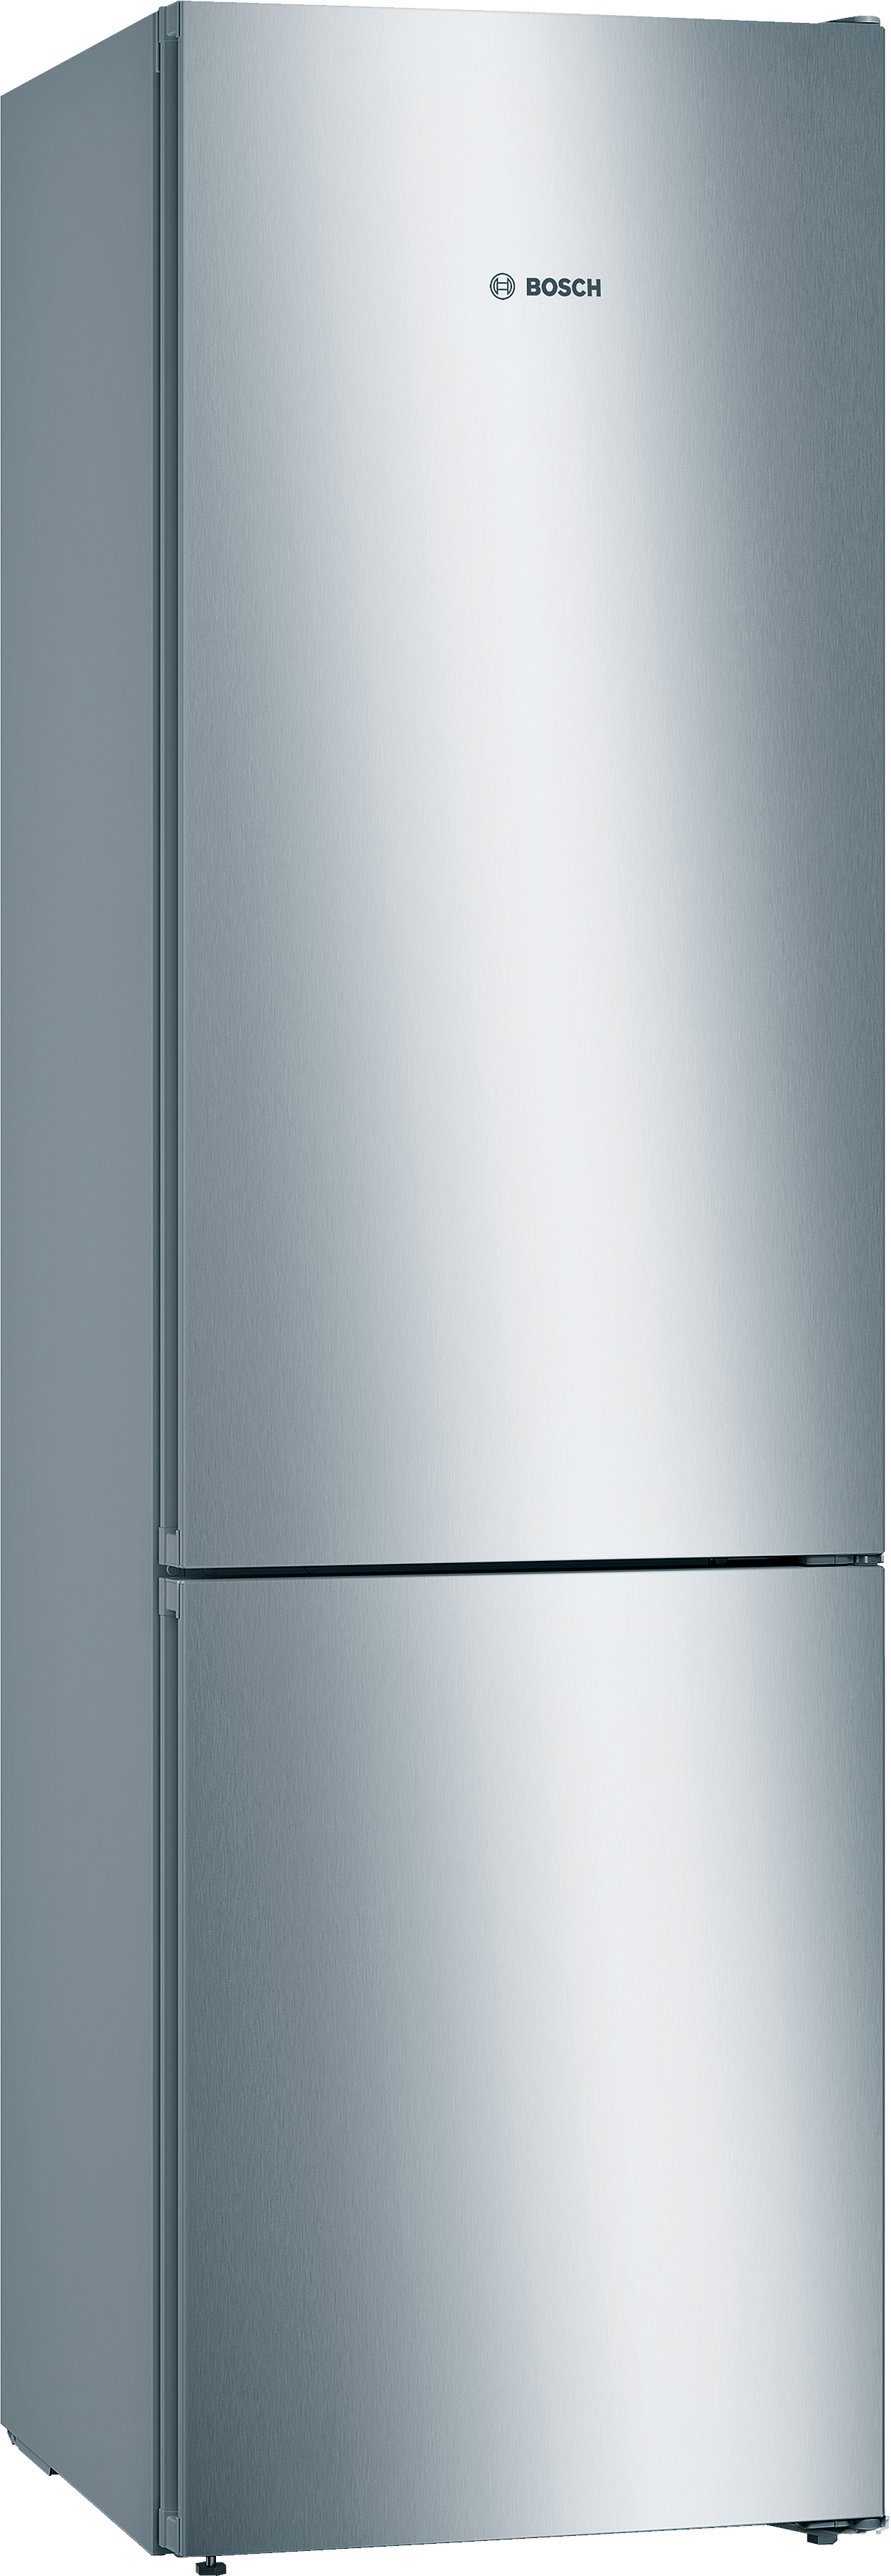 Инструкция холодильник Bosch KGN39VL316